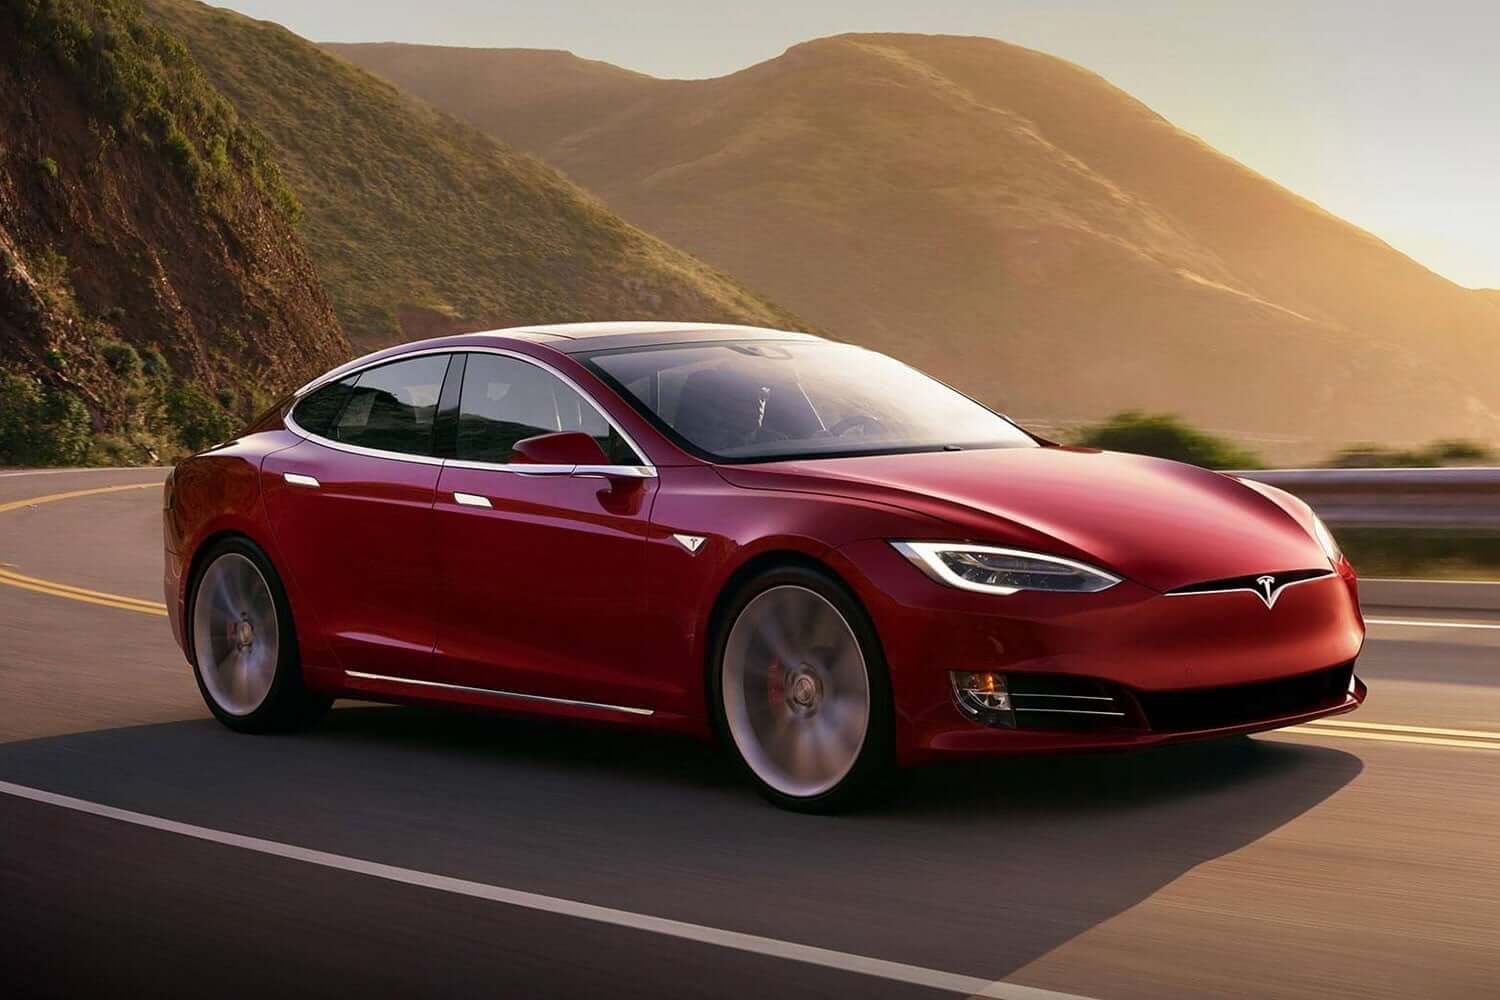 Inżynierowie znaleźli sposób zrobić Tesla dwa razy lepiej